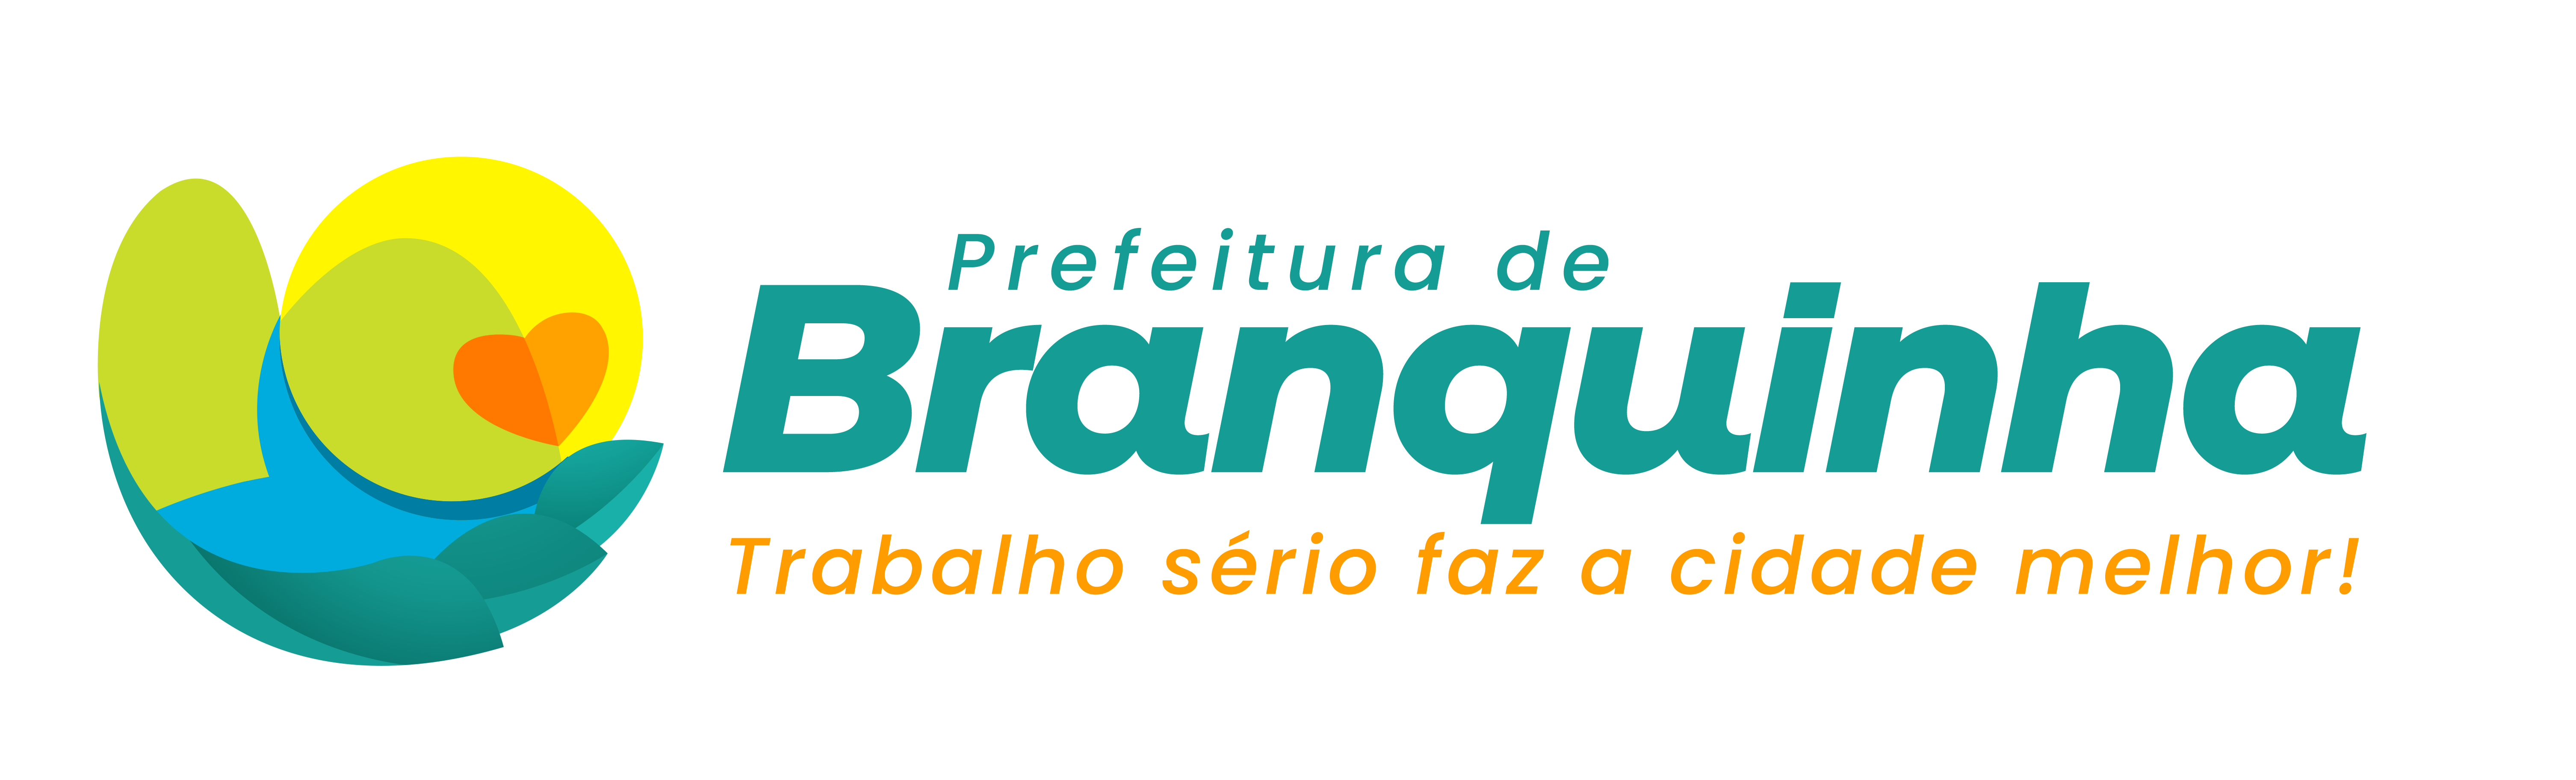 branquinha.png